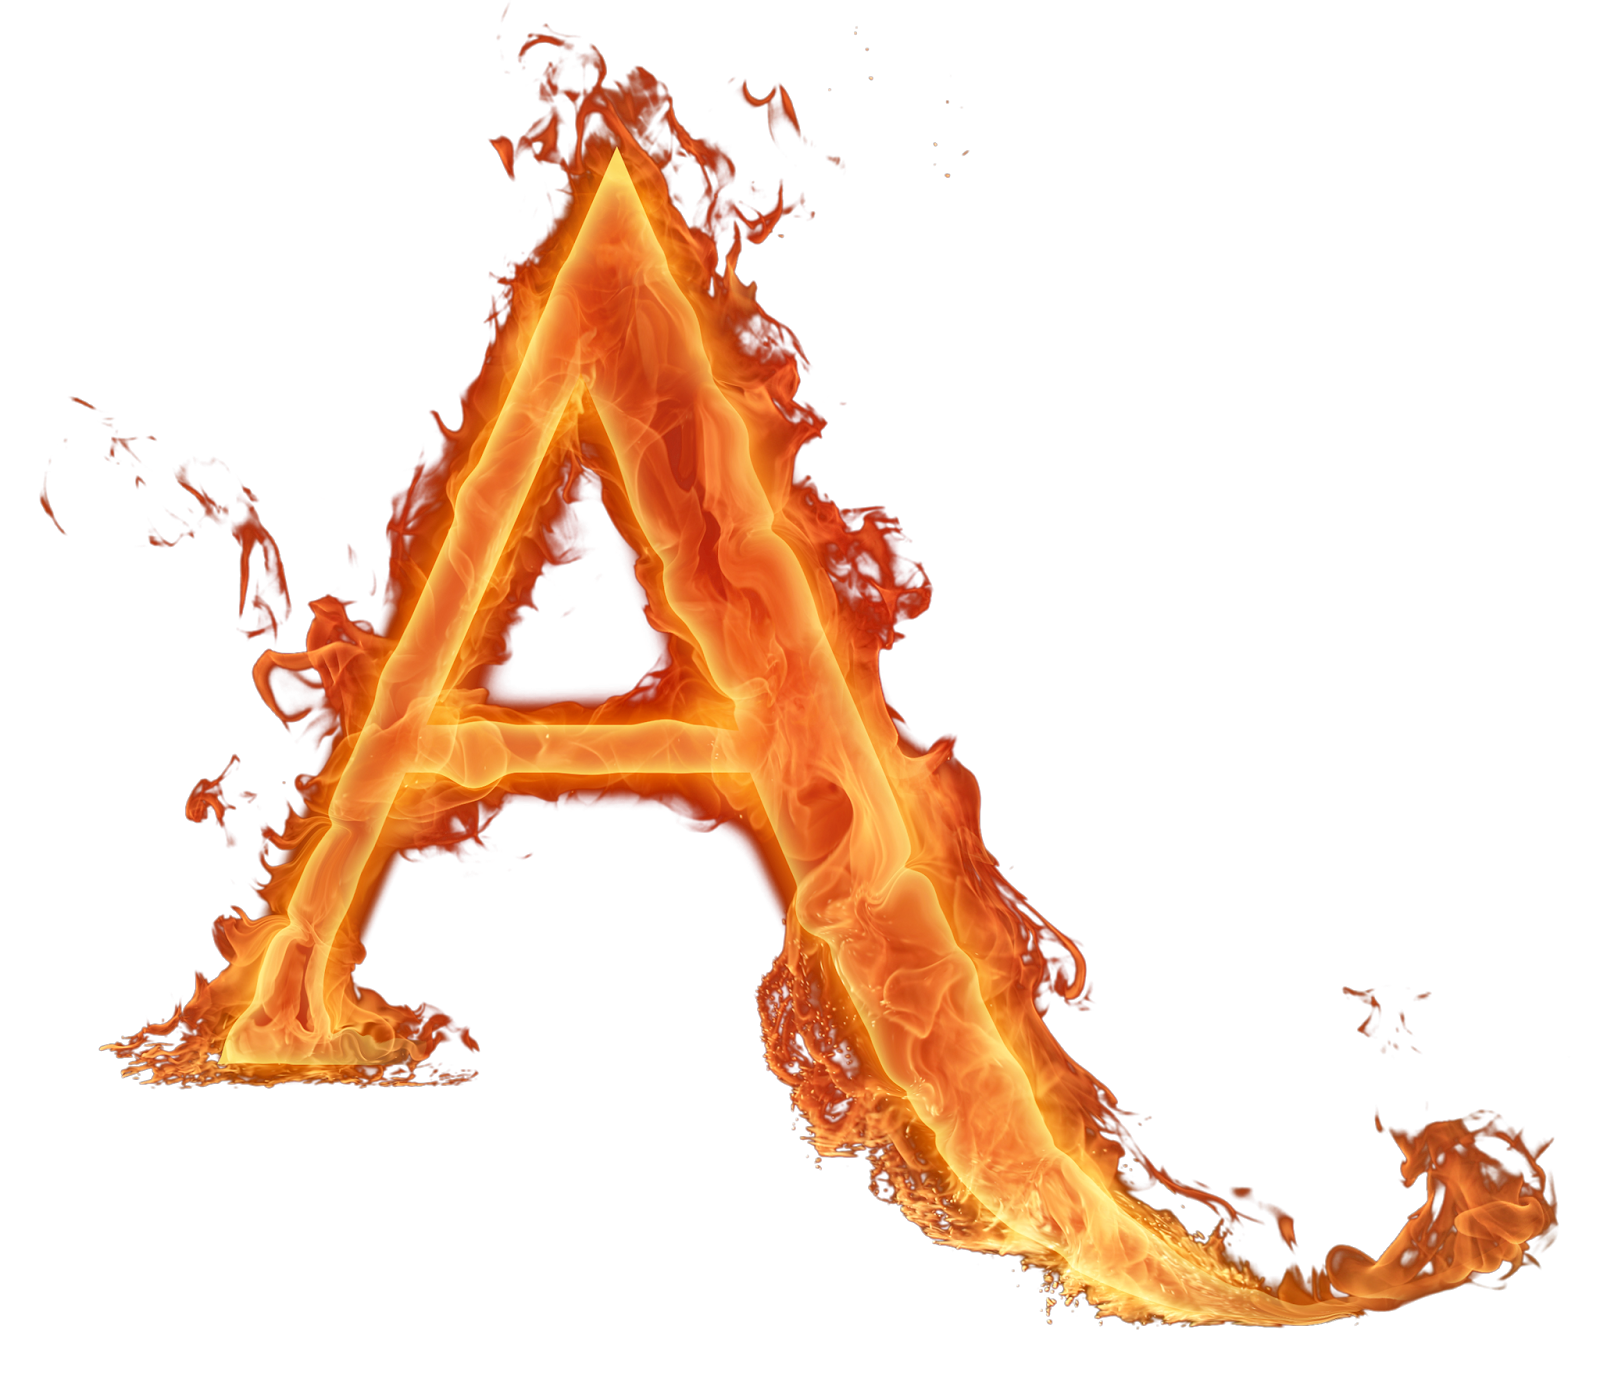 Fire Alphabet Letter Light Free Transparent Image HQ Clipart